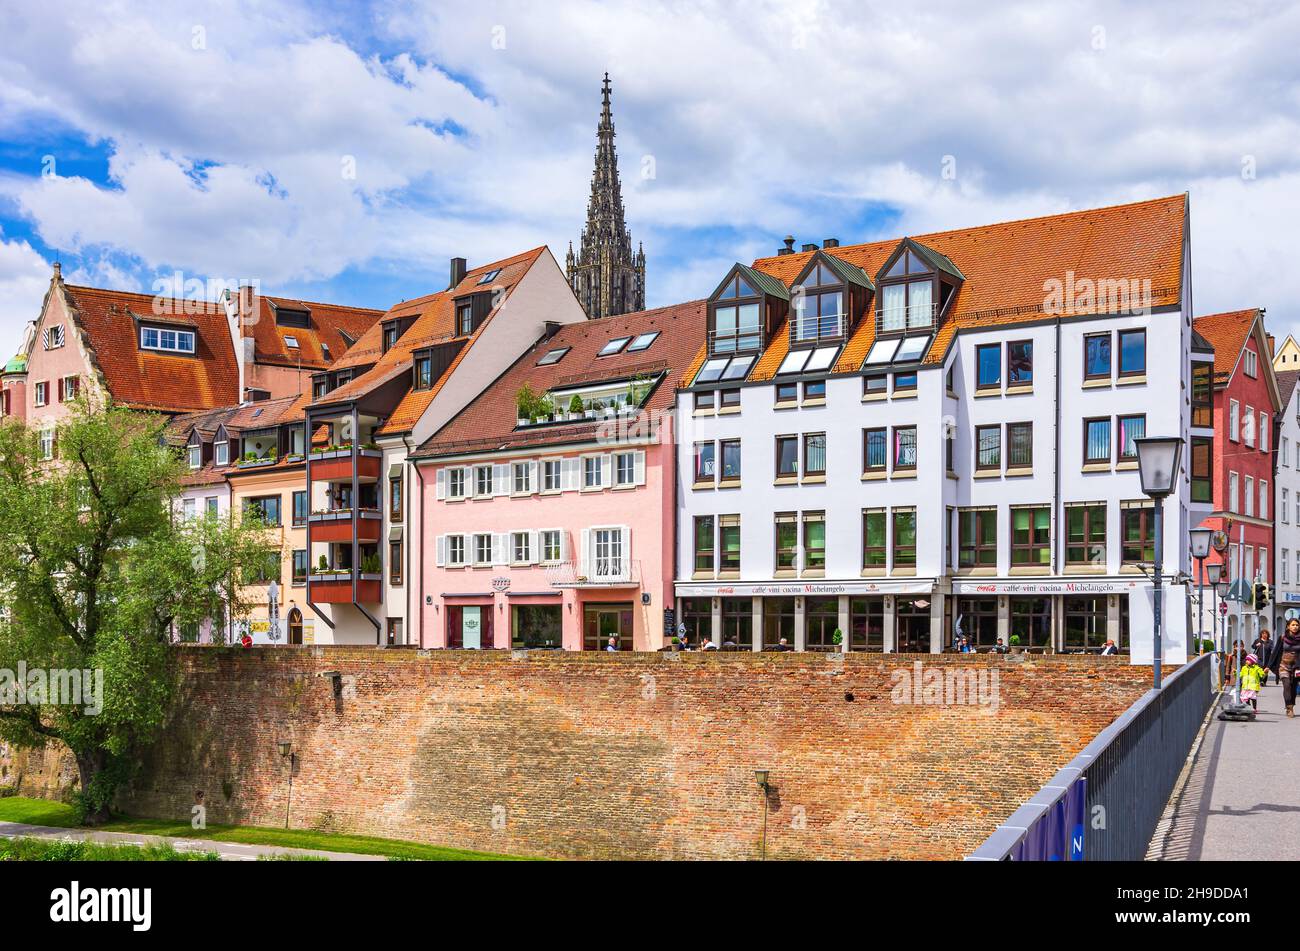 Ulm, Baden-Württemberg, Alemania: Escena de la calle que muestra partes de la histórica orilla del Danubio y la aguja del Minster en el fondo como se ve f Foto de stock